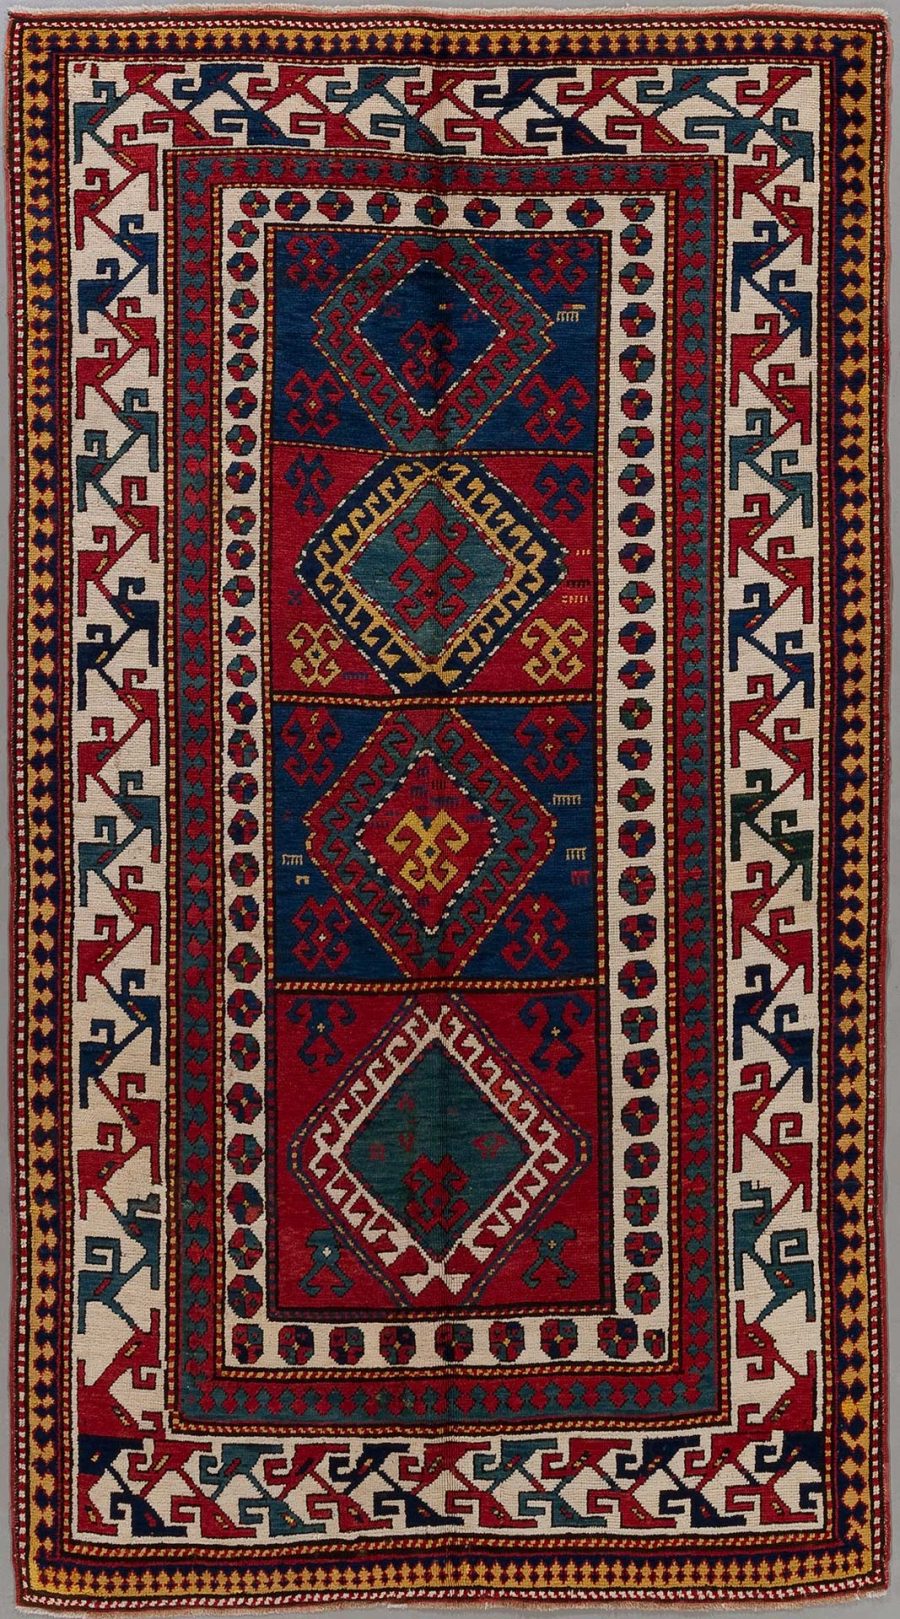 Traditioneller handgewebter Teppich mit komplexen geometrischen Mustern und Bordüren in Farben wie Dunkelblau, Rot, Beige und Akzenten in Grün und Gelb.